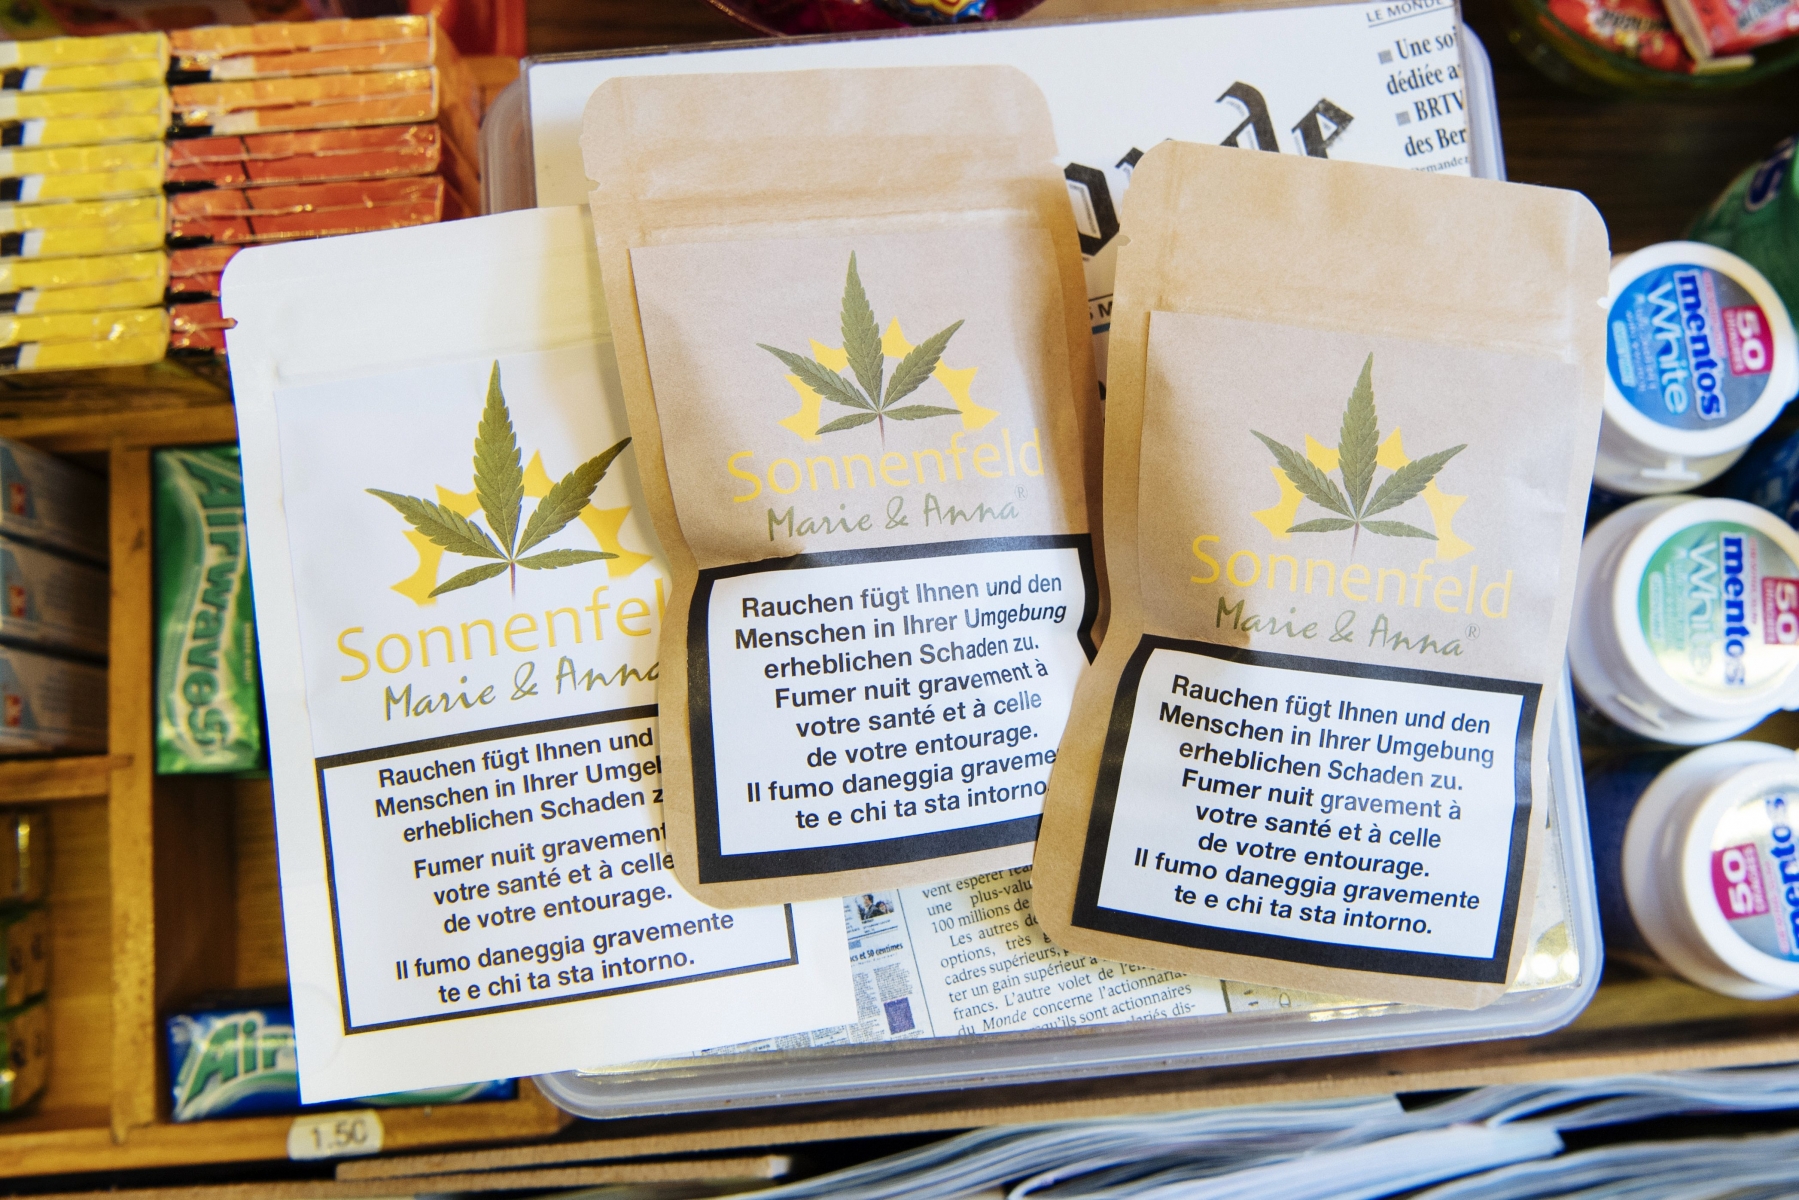 Ces sachets de cannabis sont vendus dans de nombreux kiosques neuchâtelois depuis quelques jours. 